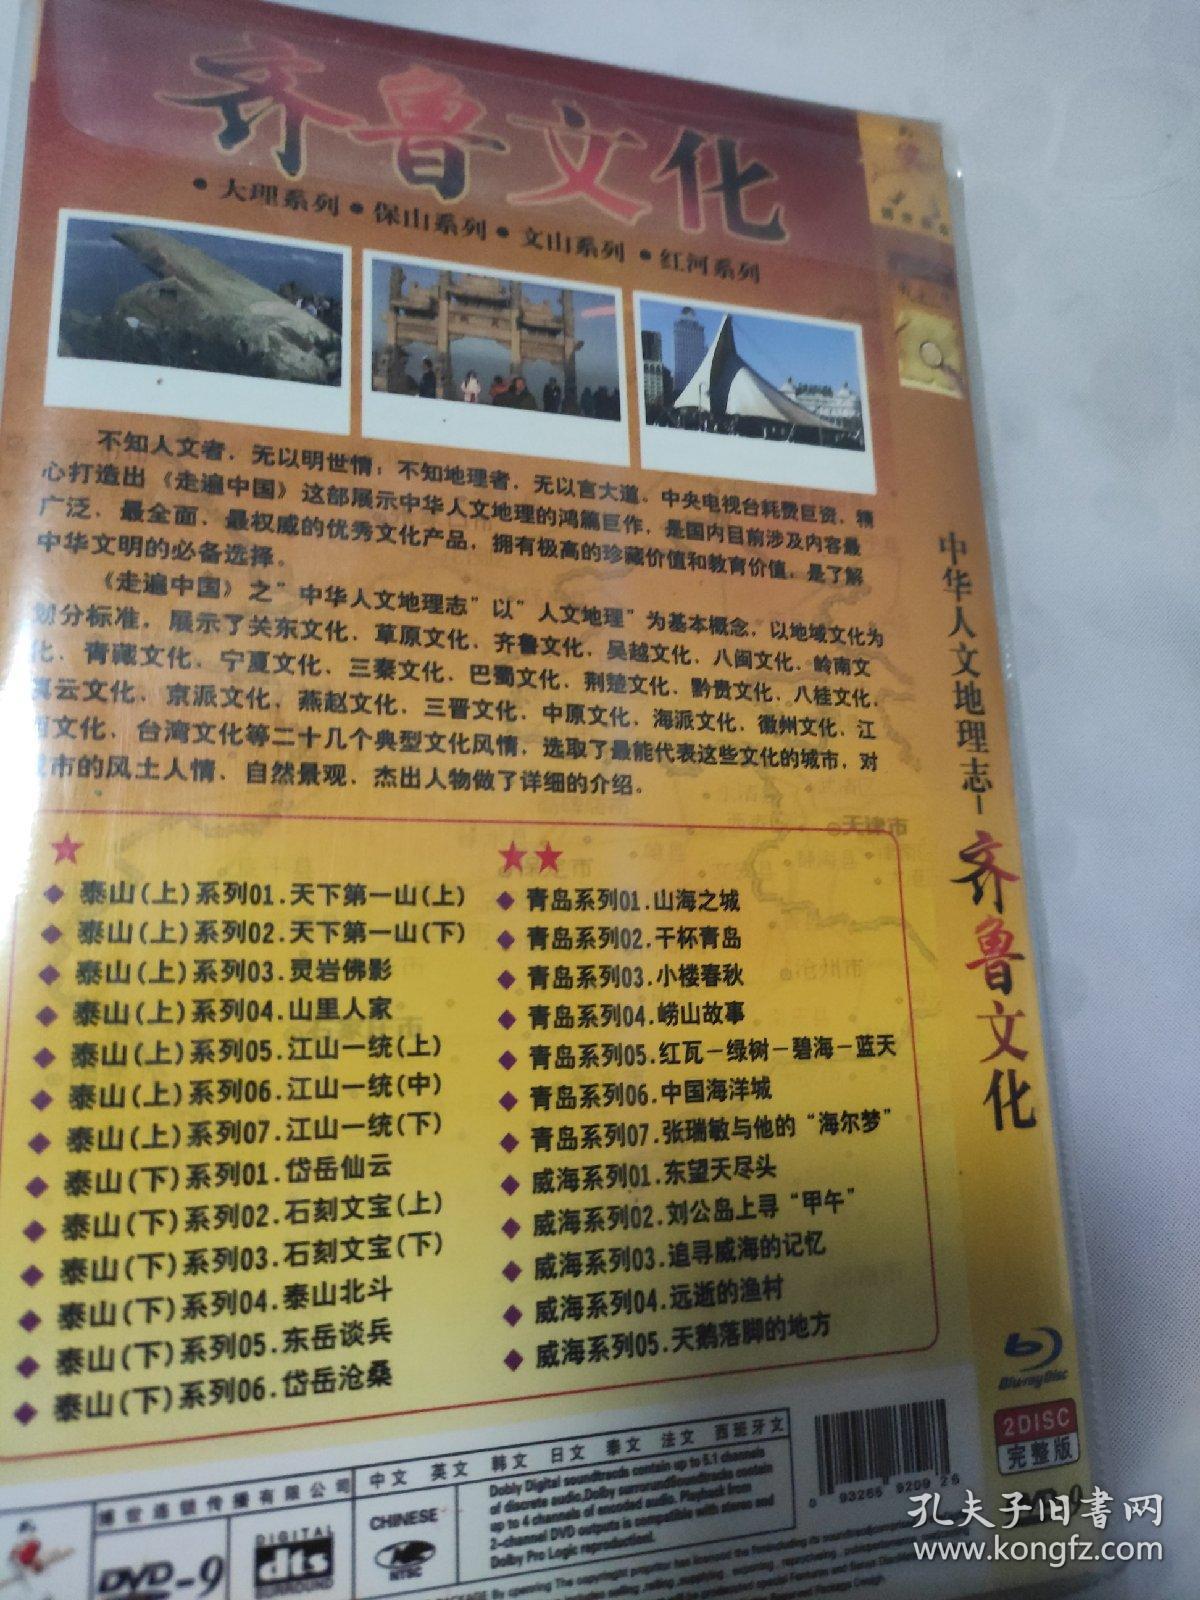 中华人文地理志齐鲁文化DVD